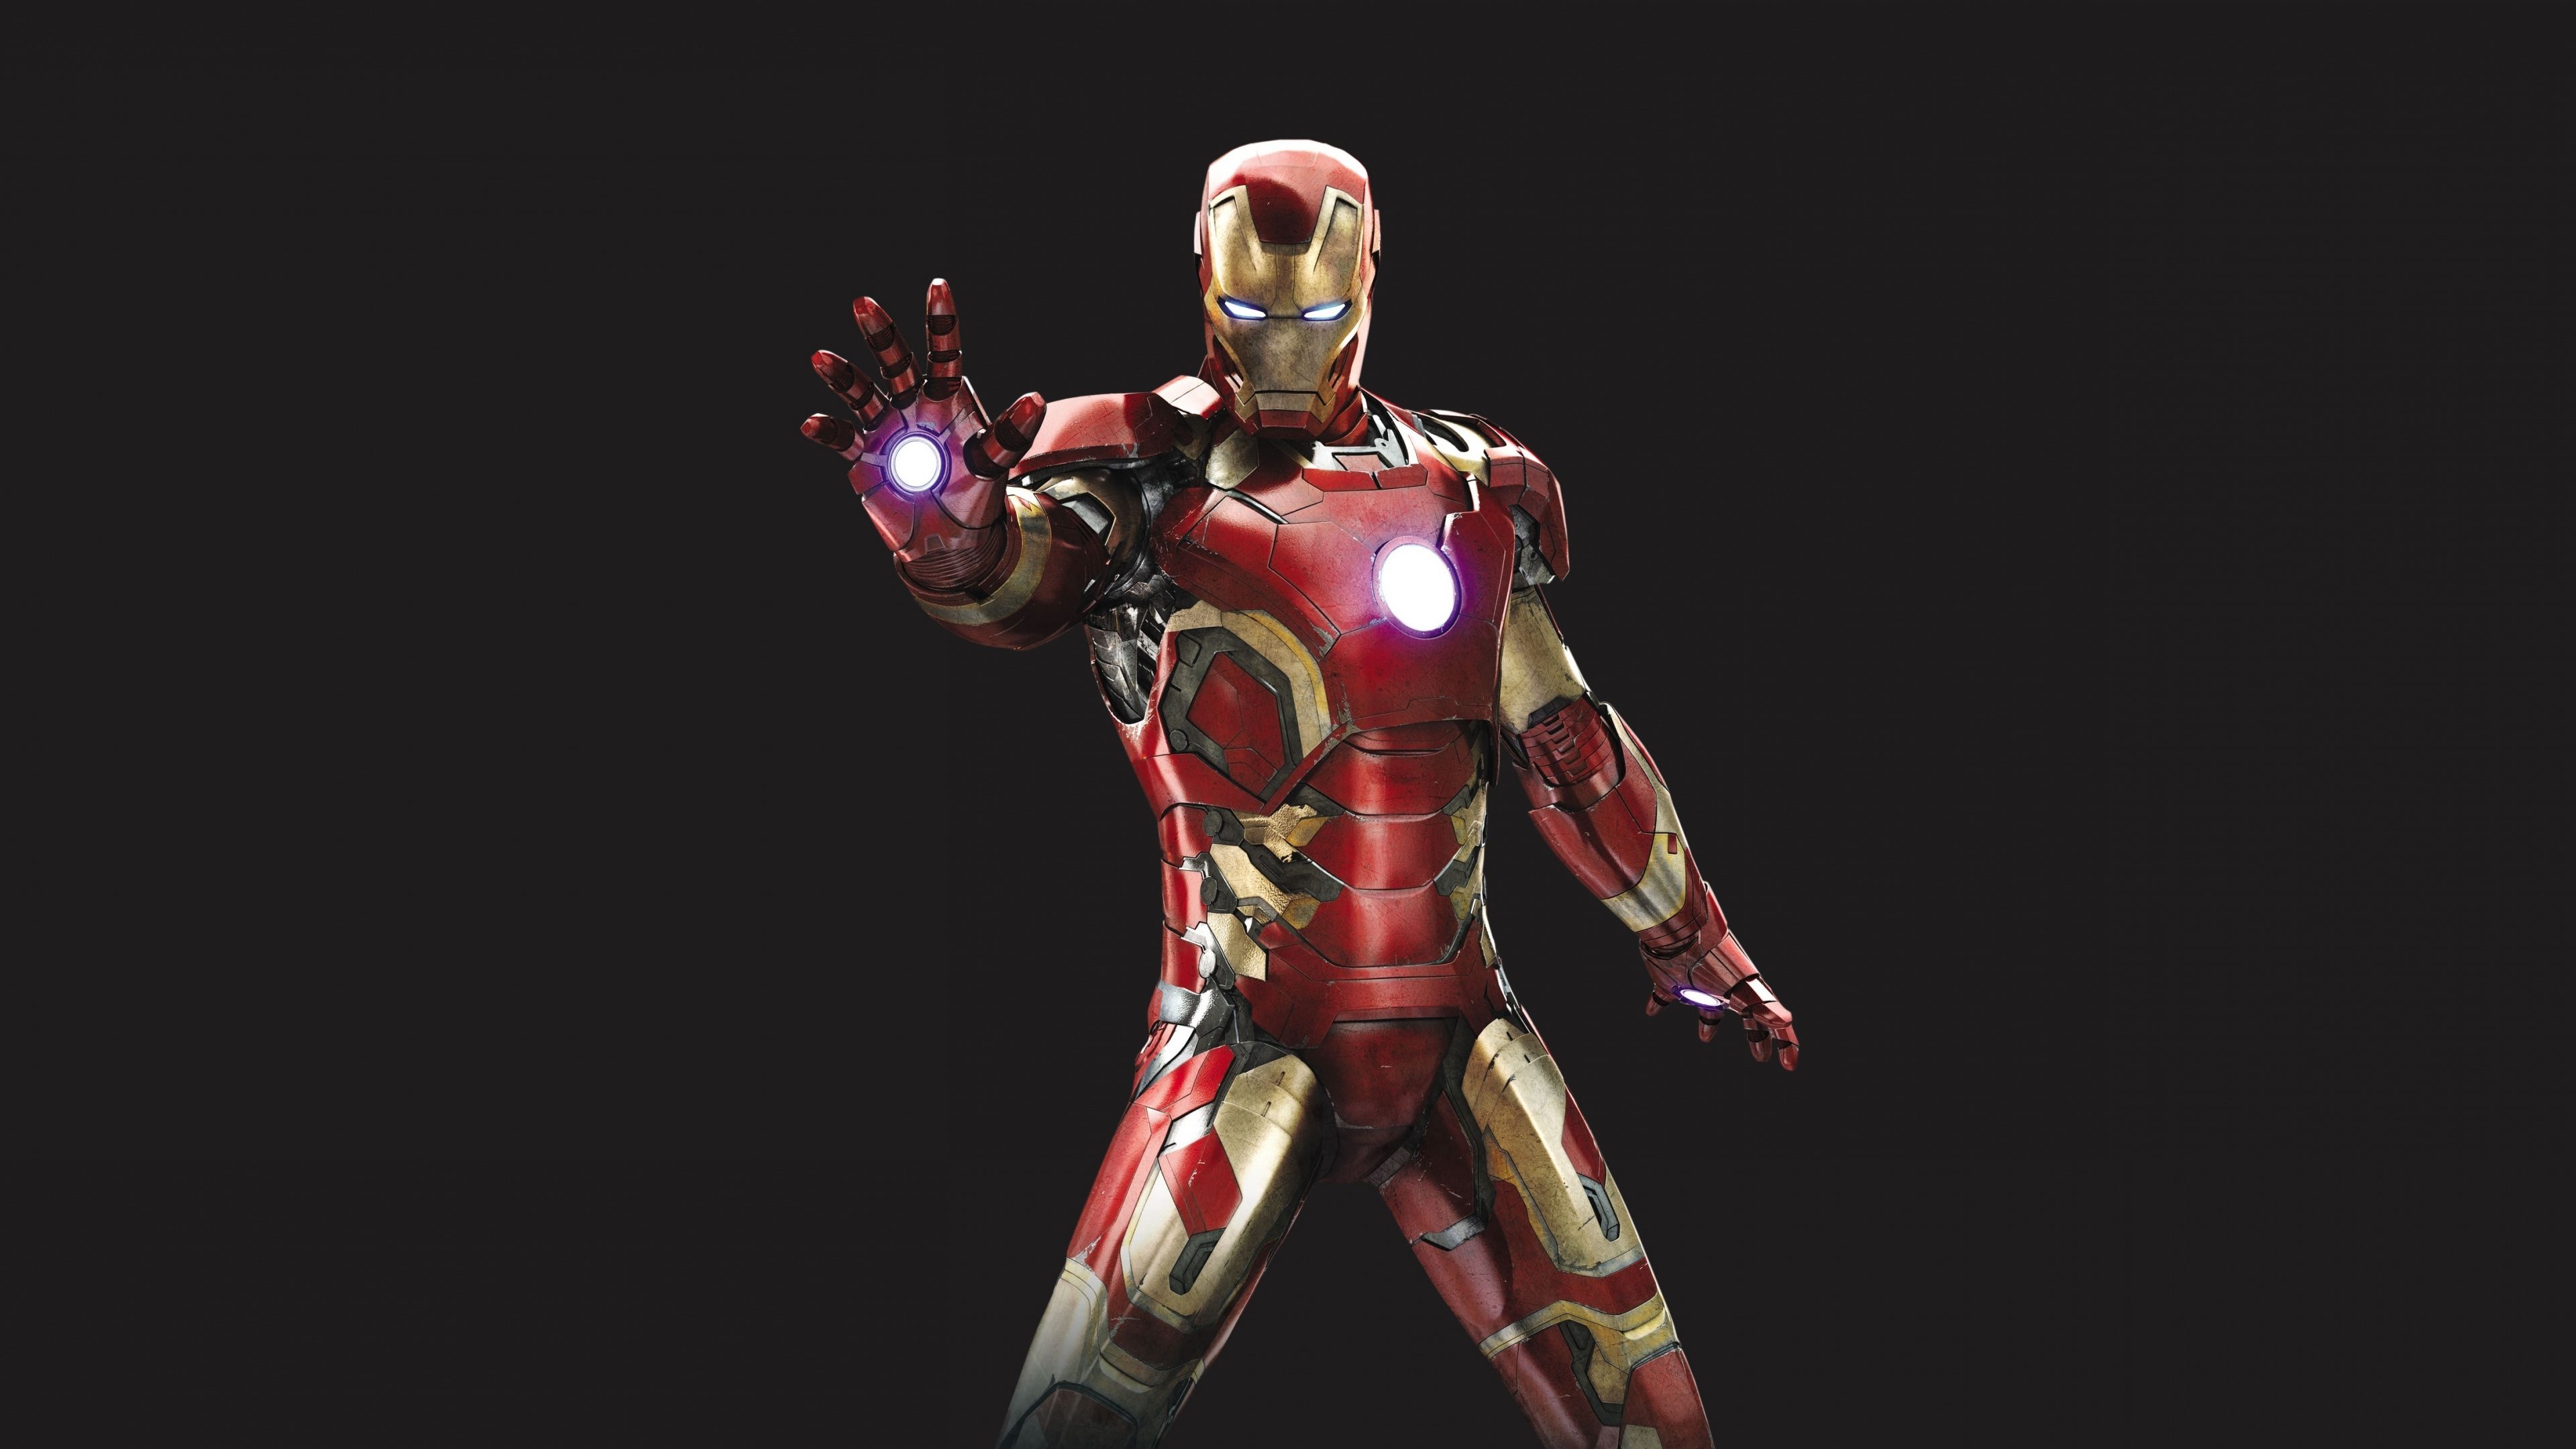 Download 3840x2160 Wallpaper Iron Man, Iron Suit, Superhero